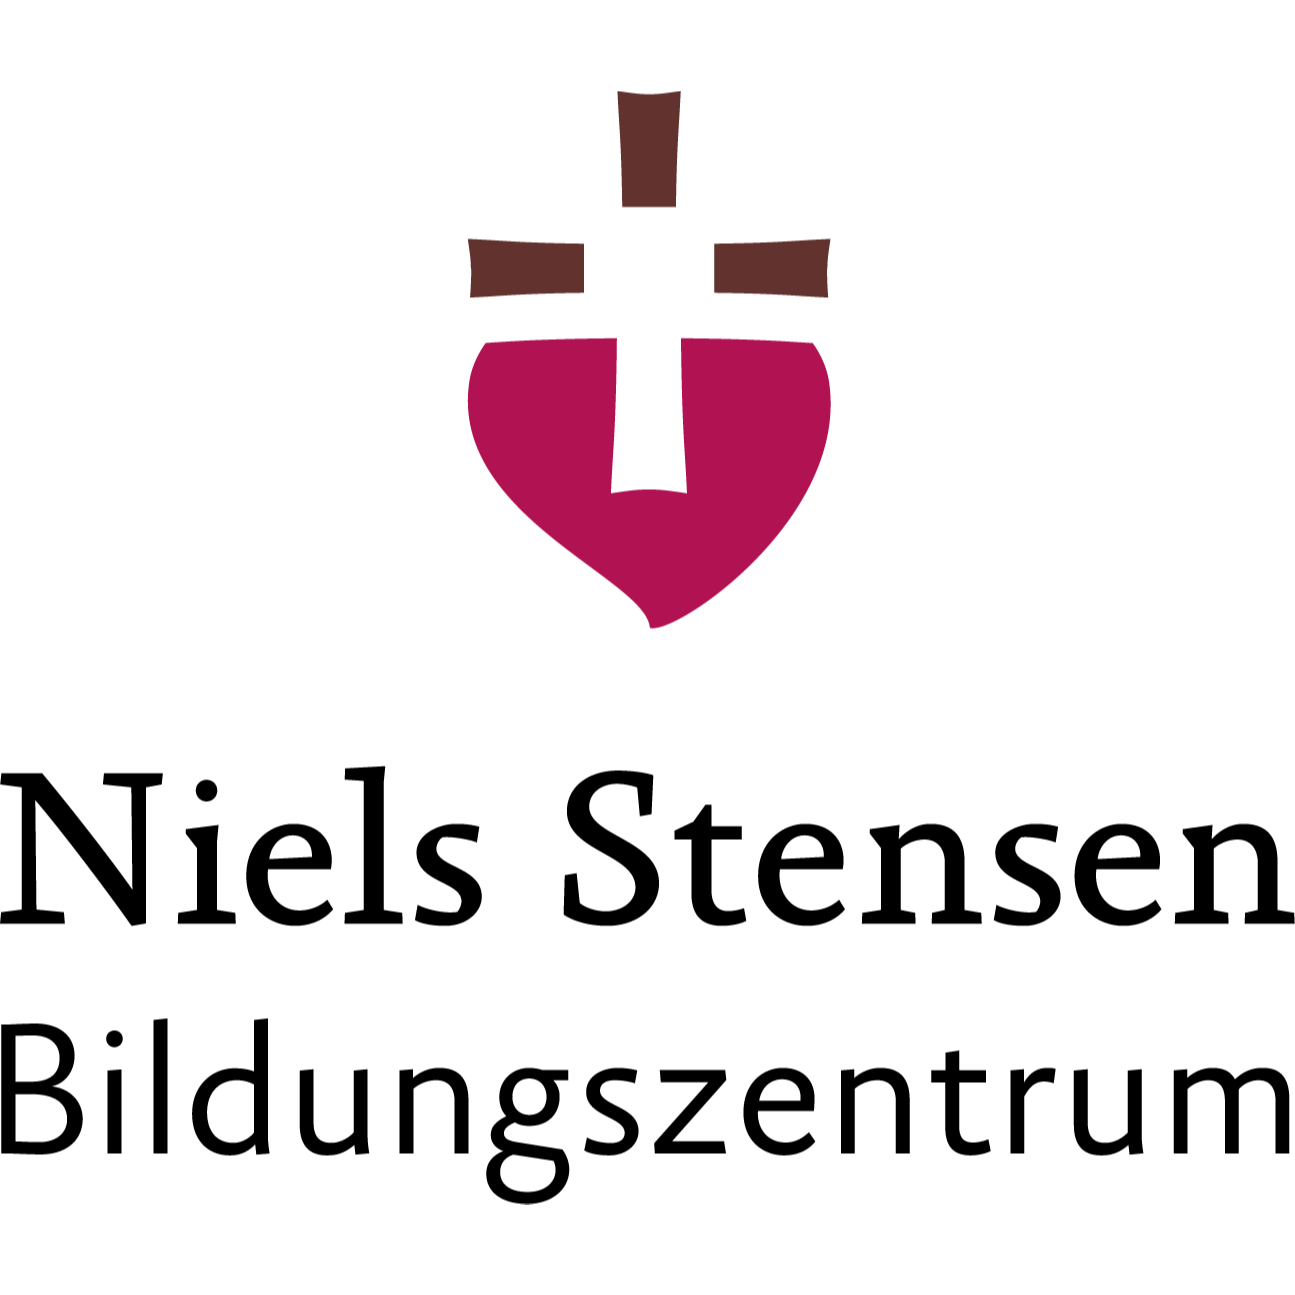 Niels Stensen Bildungszentrum in Osnabrück - Logo